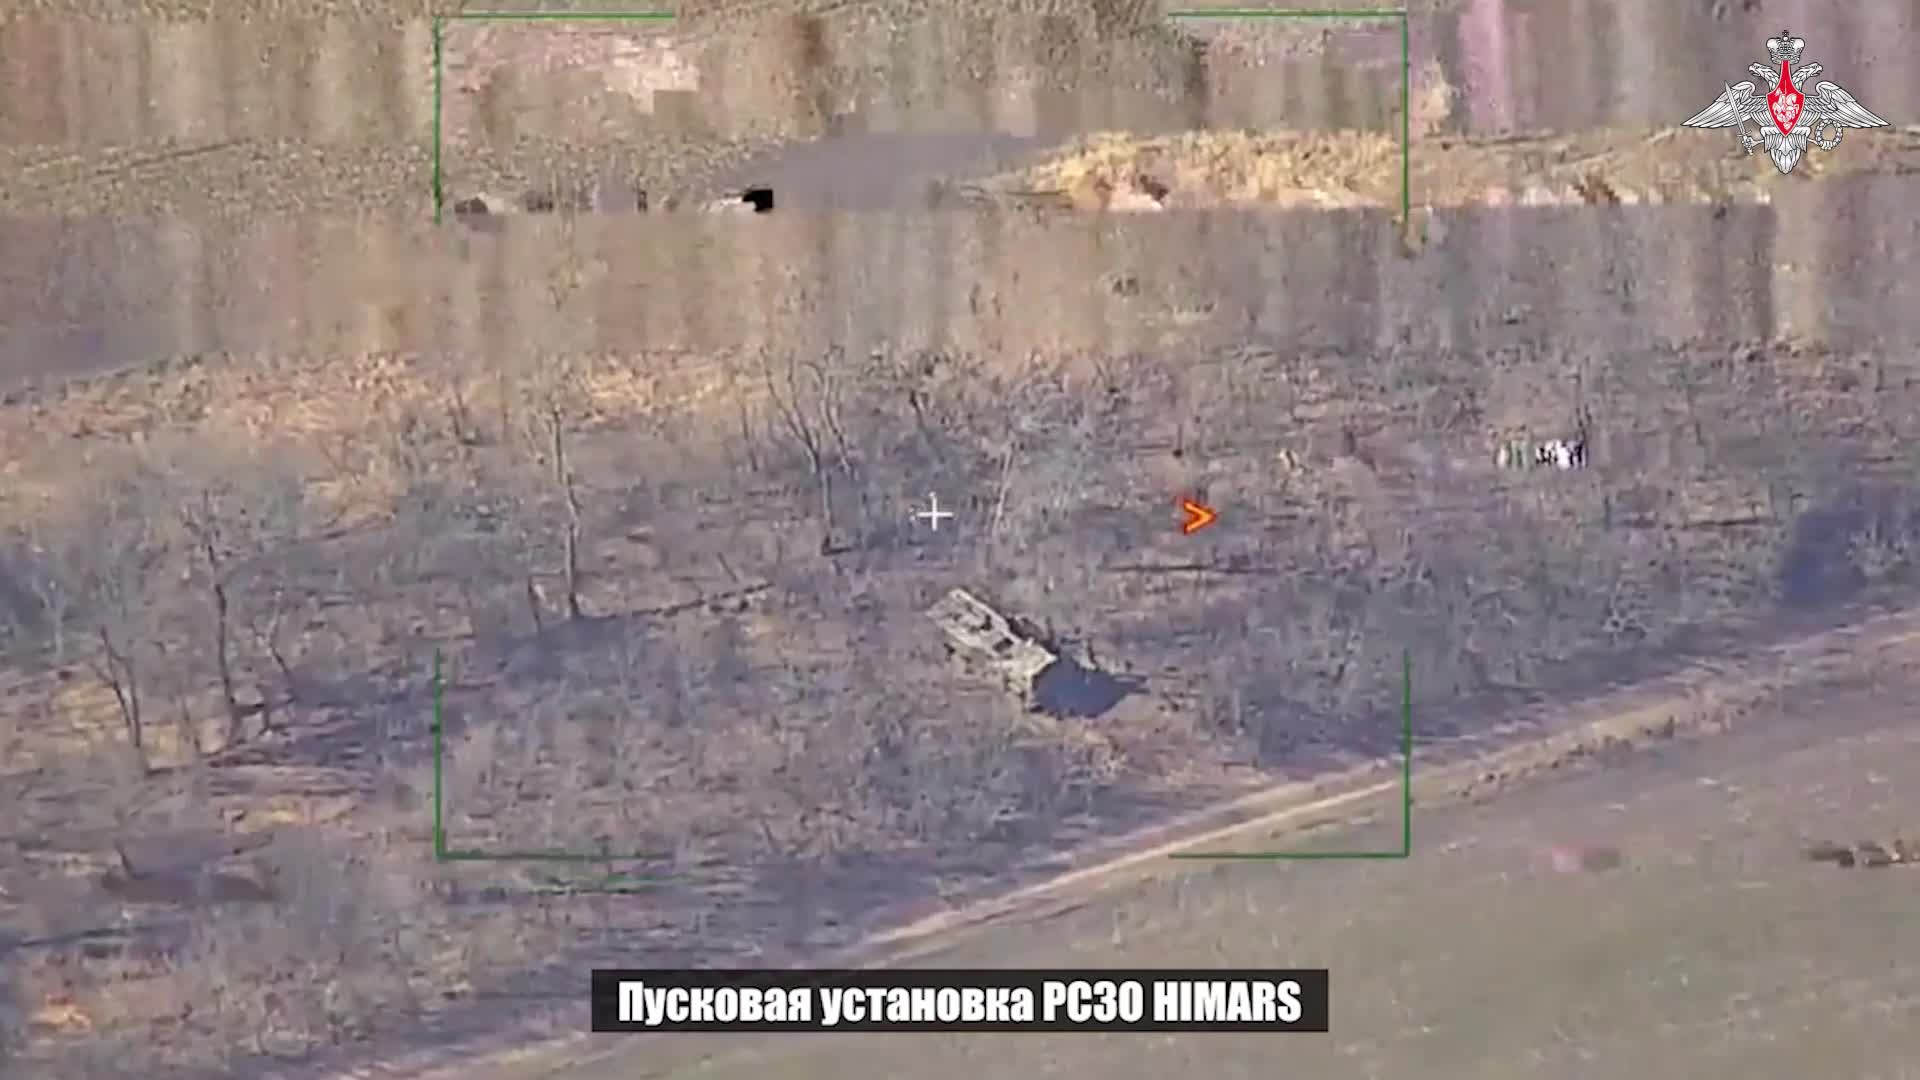 Thế giới - Đêm 12/3, nhiều mục tiêu quân sự Ukraine bị Nga tấn công, bầu trời rực sáng (Hình 2).